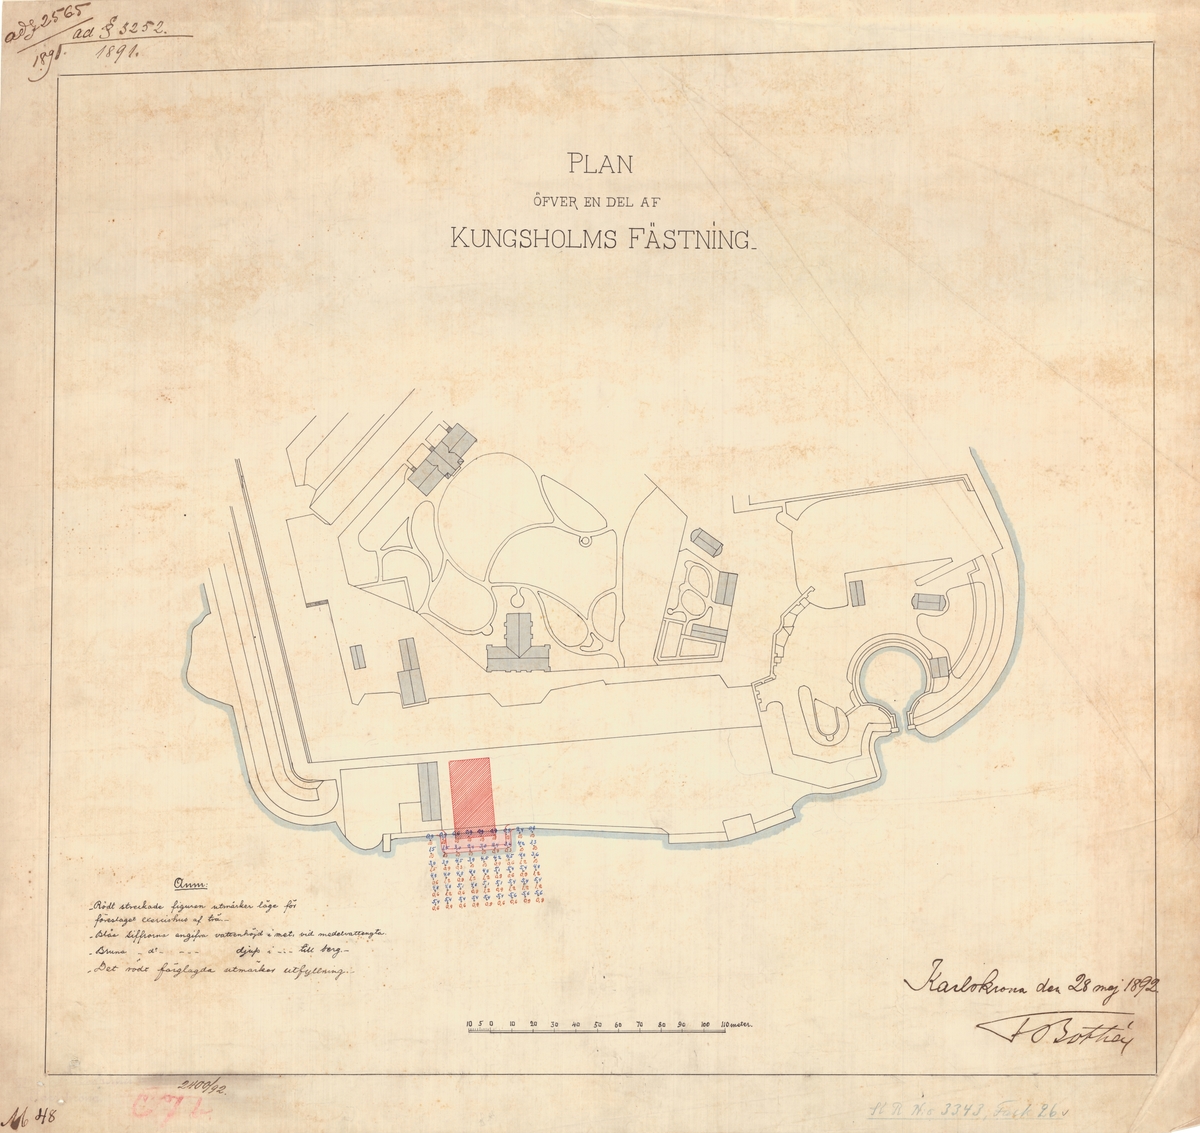 Plan över del av Kungsholms fästning